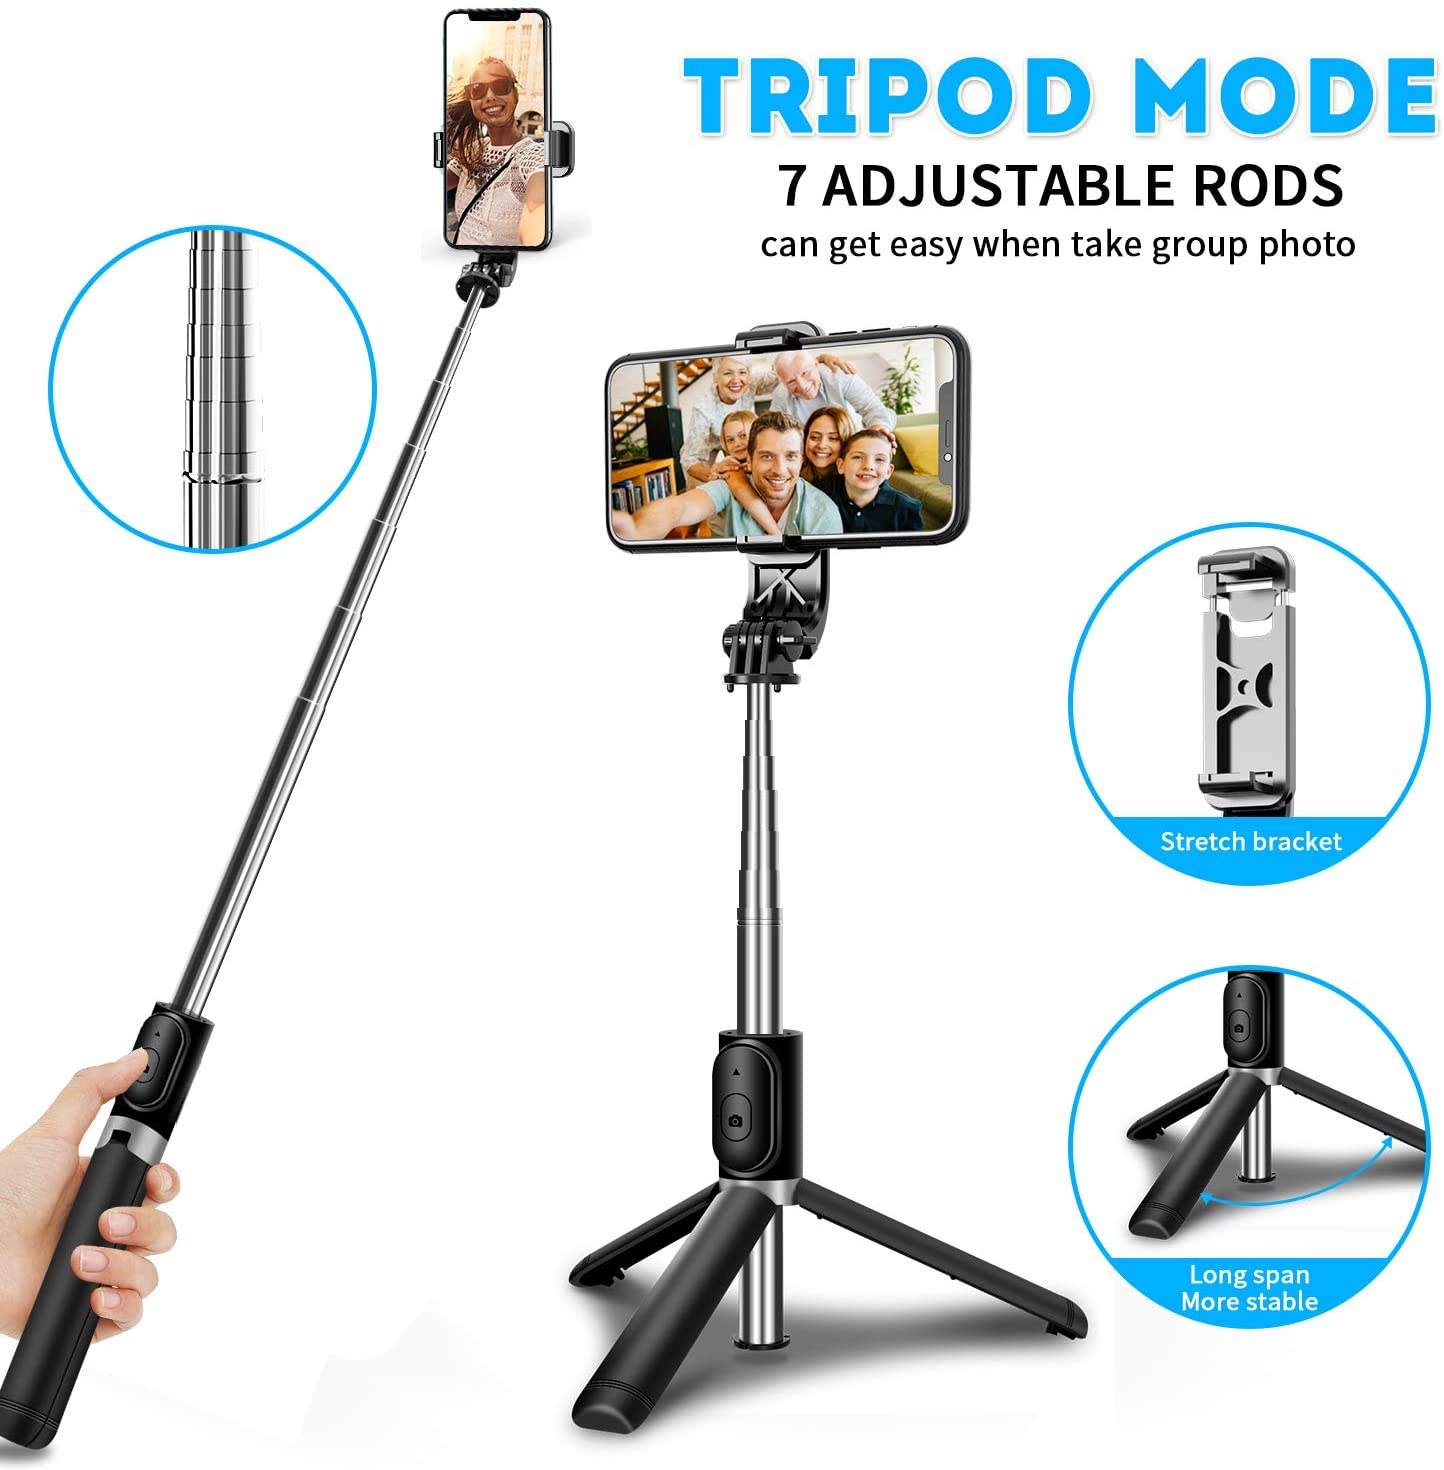 Tripé selfie stick com controle remoto sem fio, mini extensível 4 em 1-margarido.myshopify.com-Eletrônicos-MargaridoShop